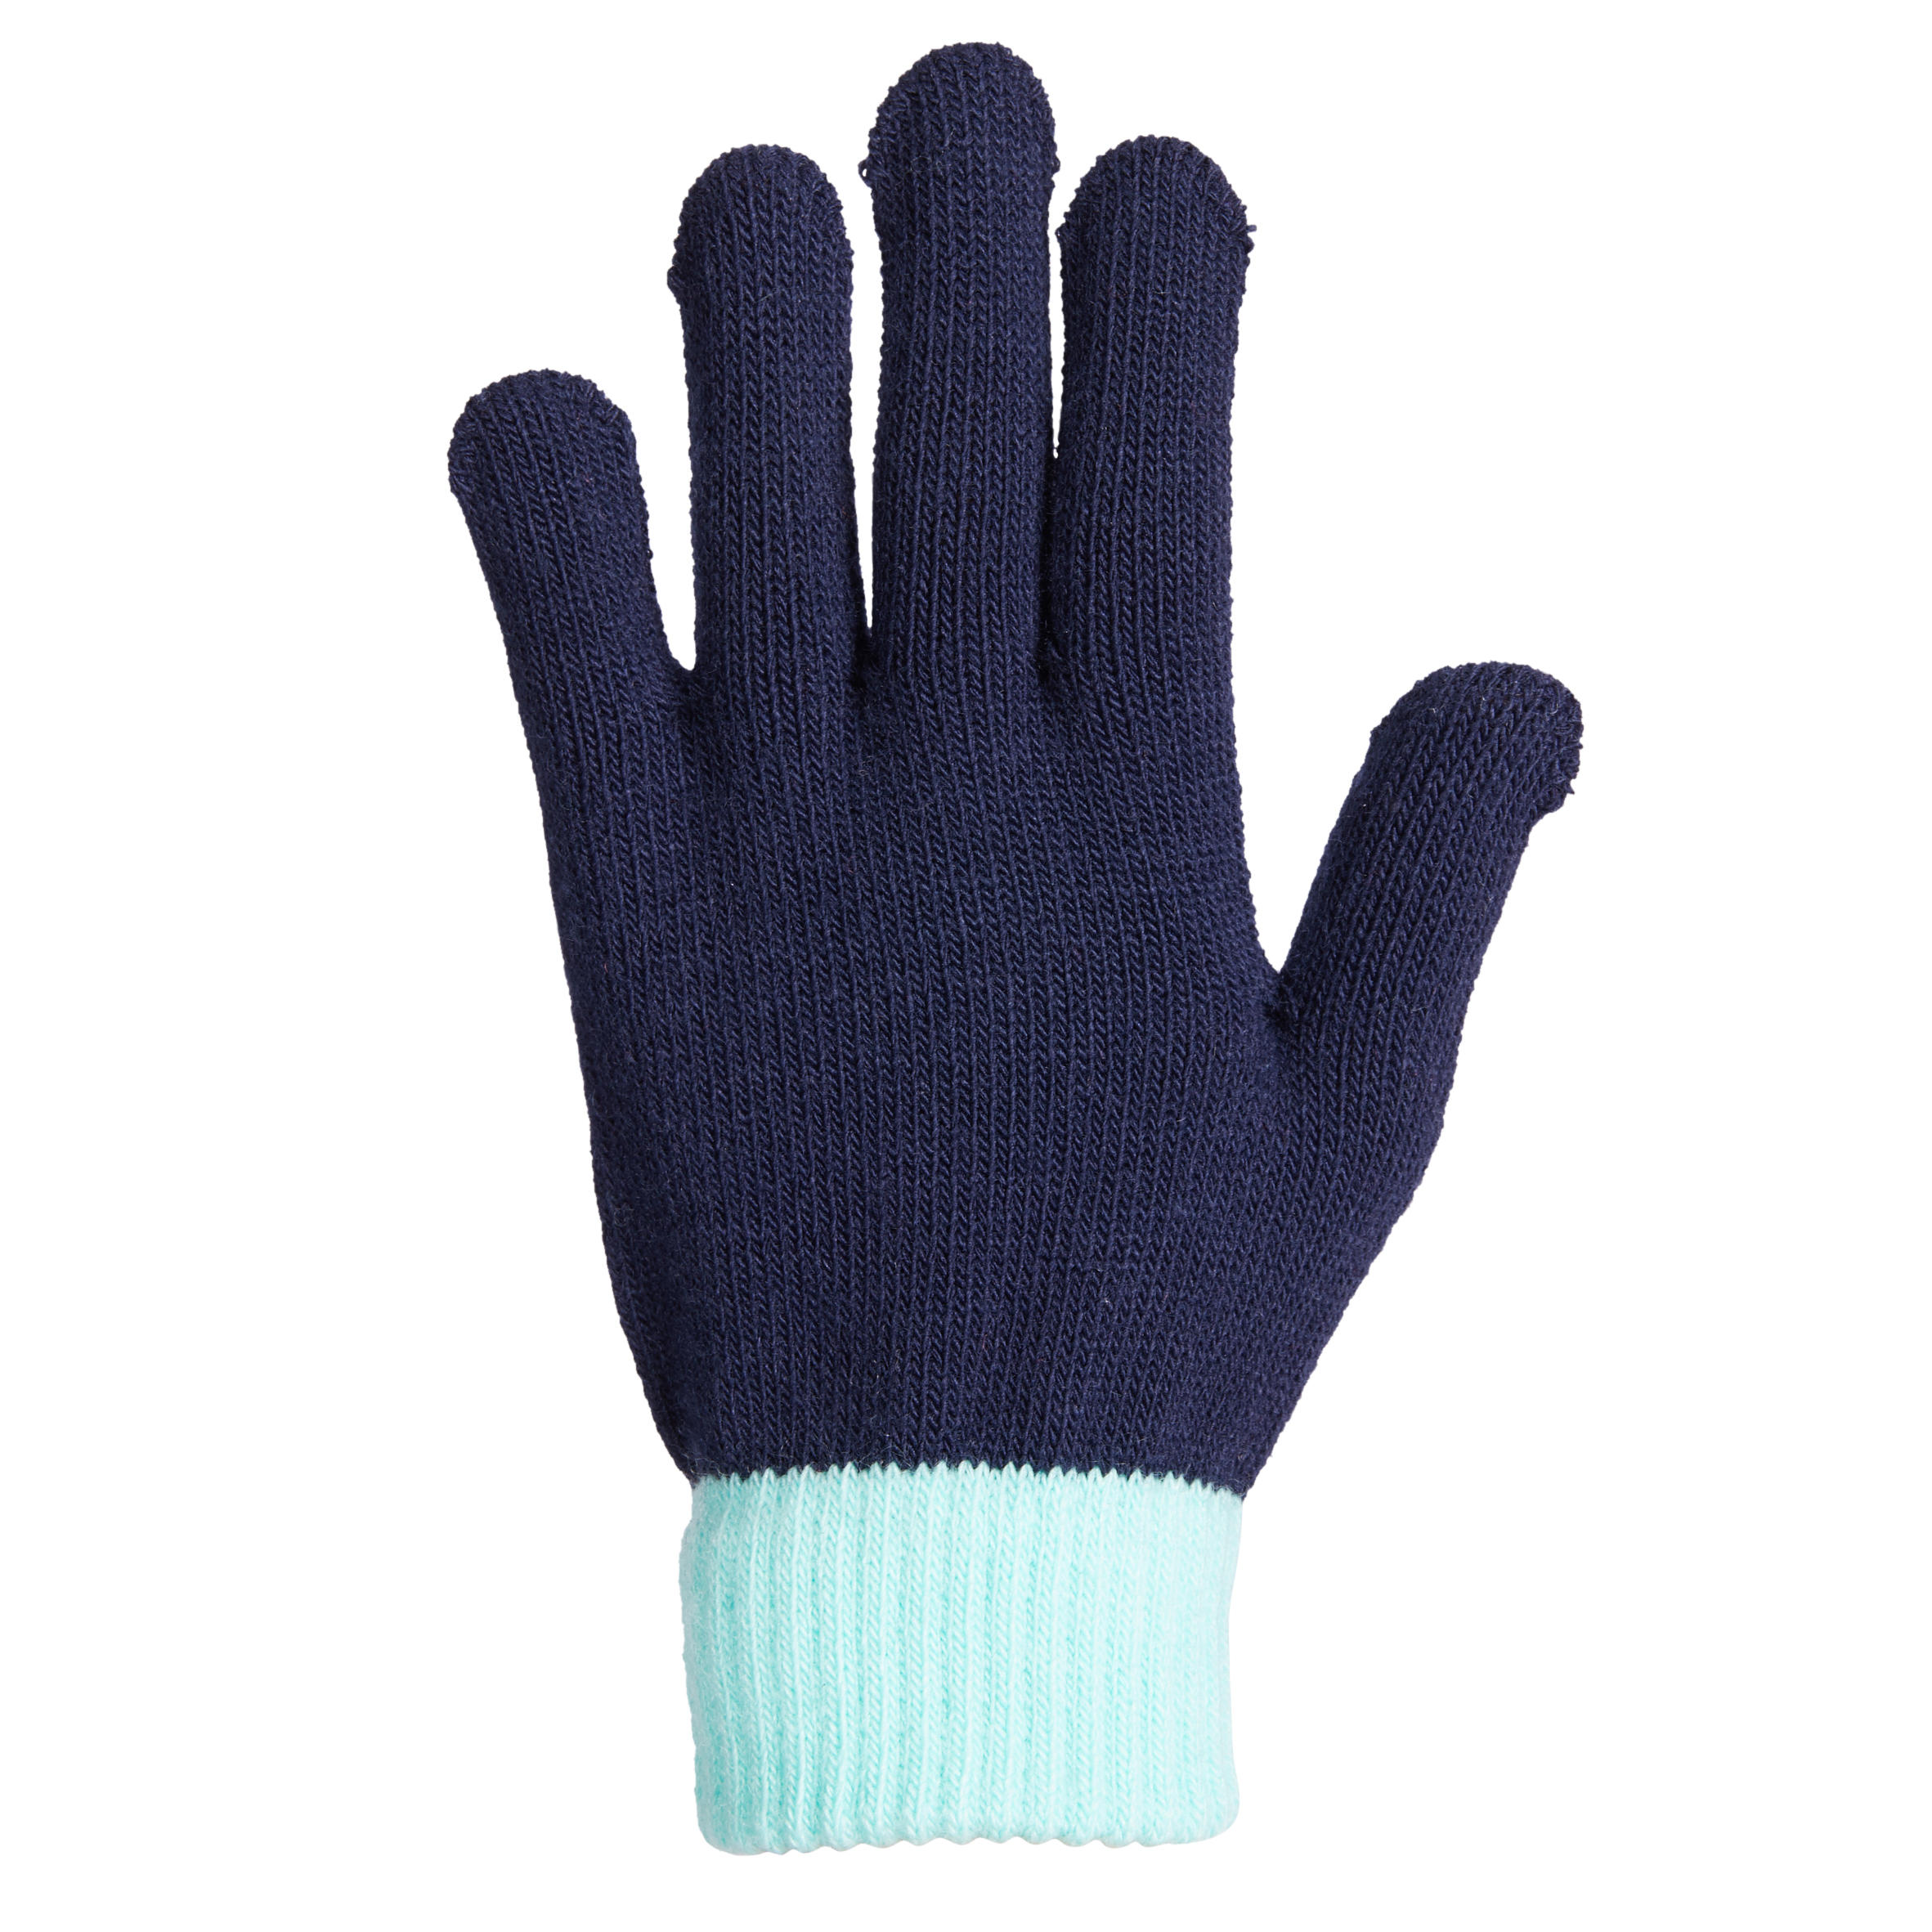 [[จัดส่งพรุ่งนี้]] ถุงมือเด็กผ้าถักแบบมีปุ่มซิลิโคนสำหรับขี่ม้า (สีกรมท่า/ฟ้า Turquoise)